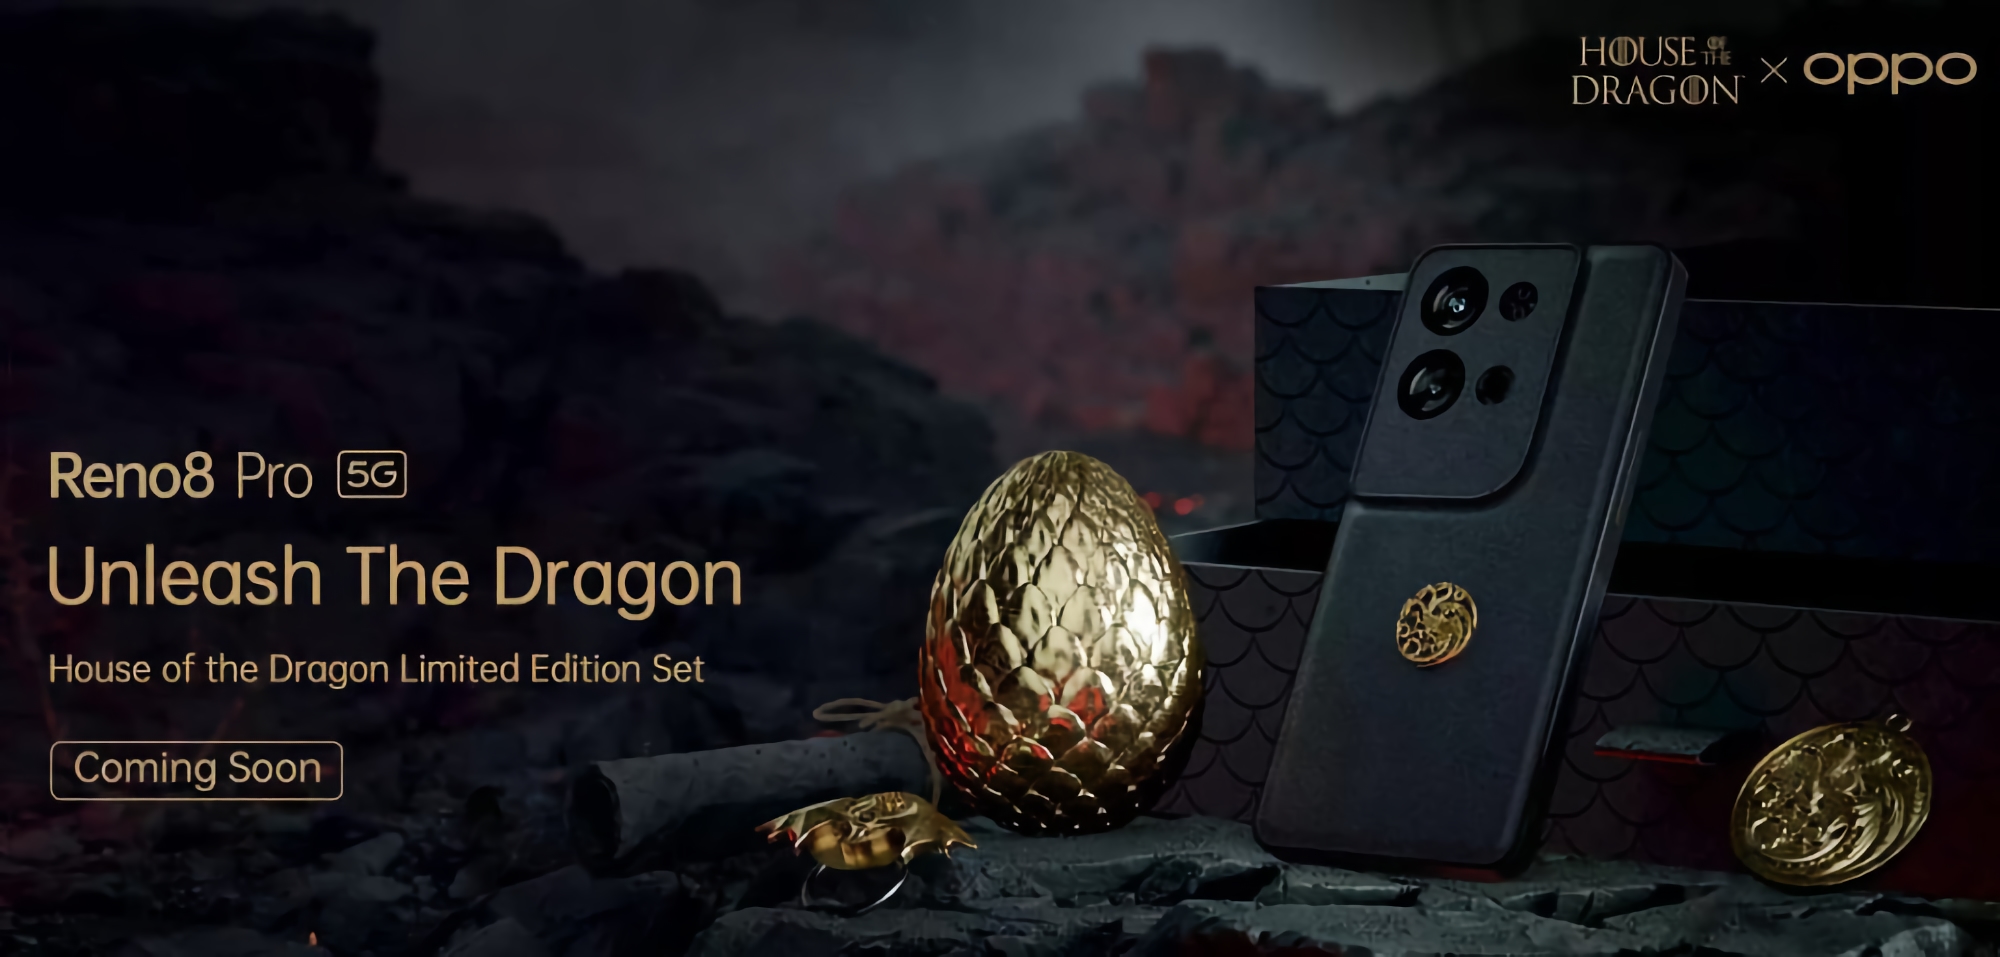 Per i fan della serie House of the Dragon: OPPO rilascerà uno smartphone speciale in edizione limitata Reno 8 Pro 5G